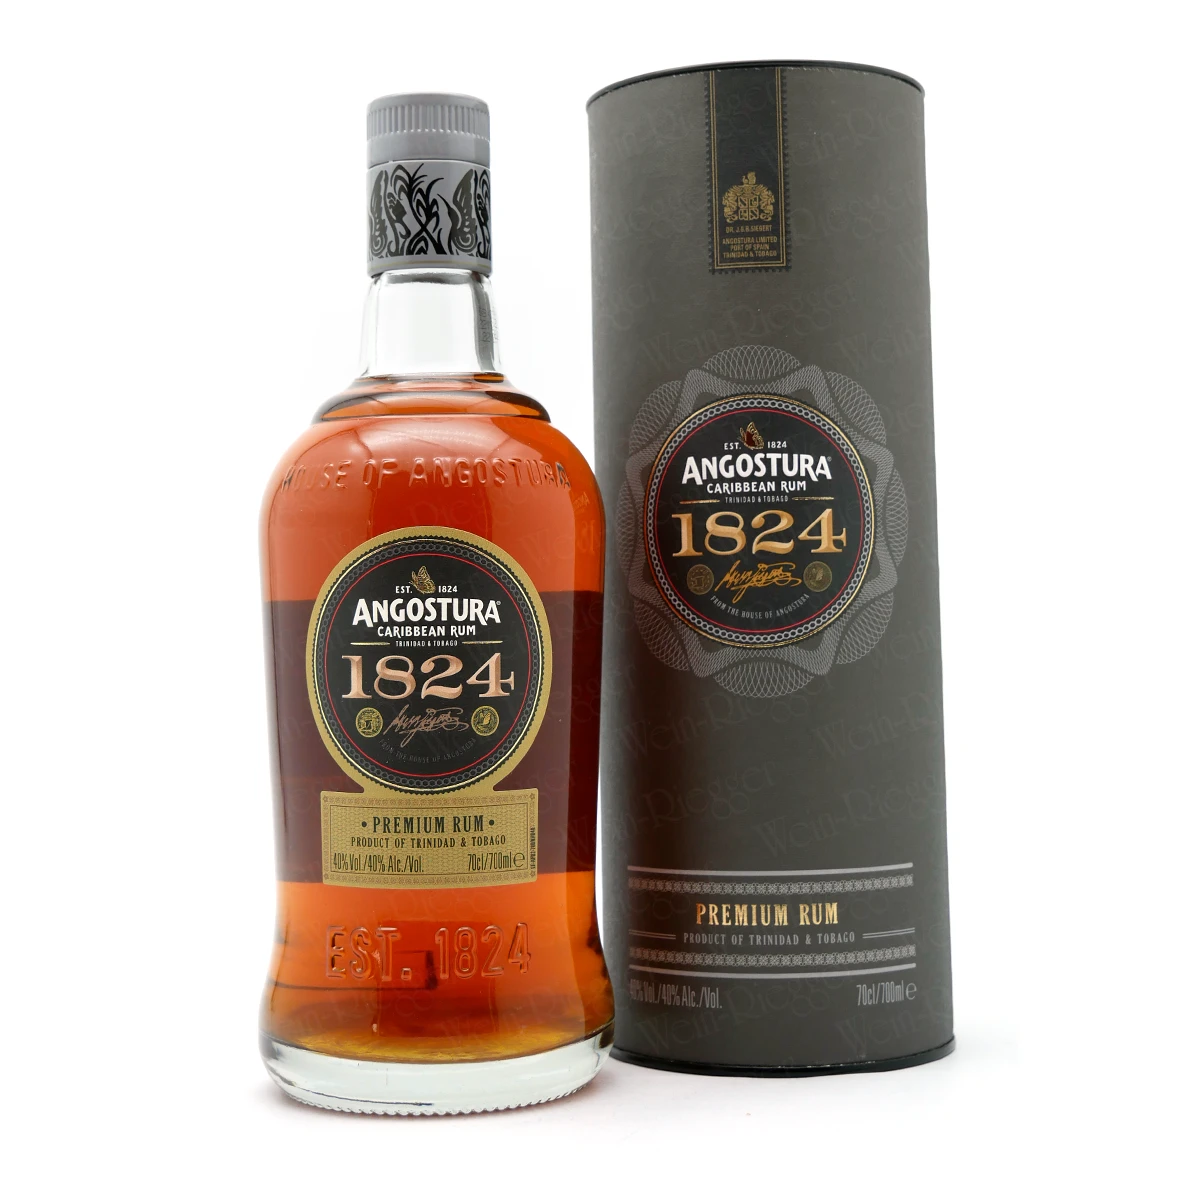 ANGOSTURA 1824 Premium Rum